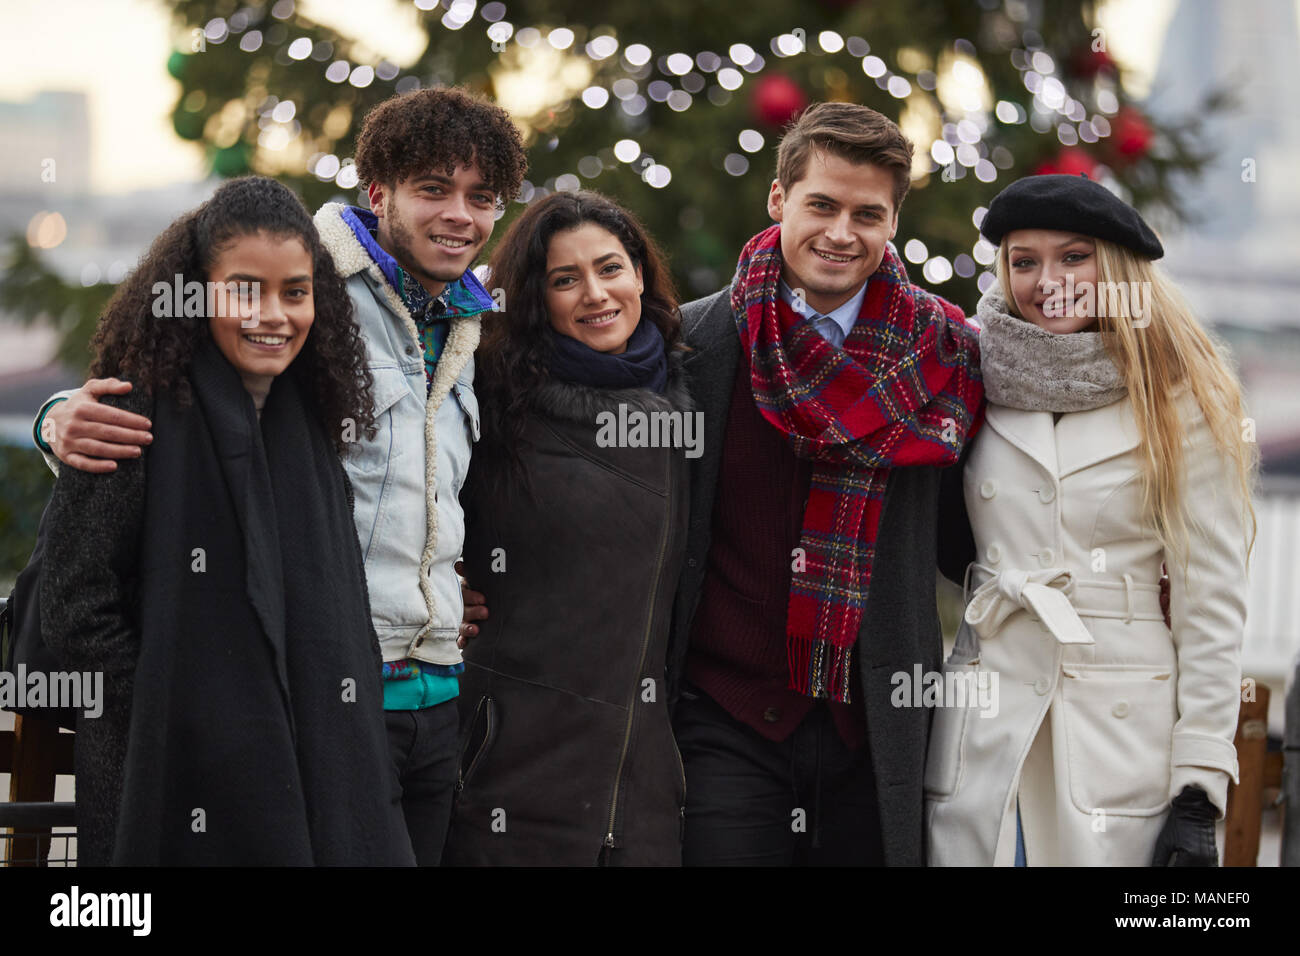 Porträt der jungen Freunde zu Fuß stehend durch Weihnachtsbaum Stockfoto